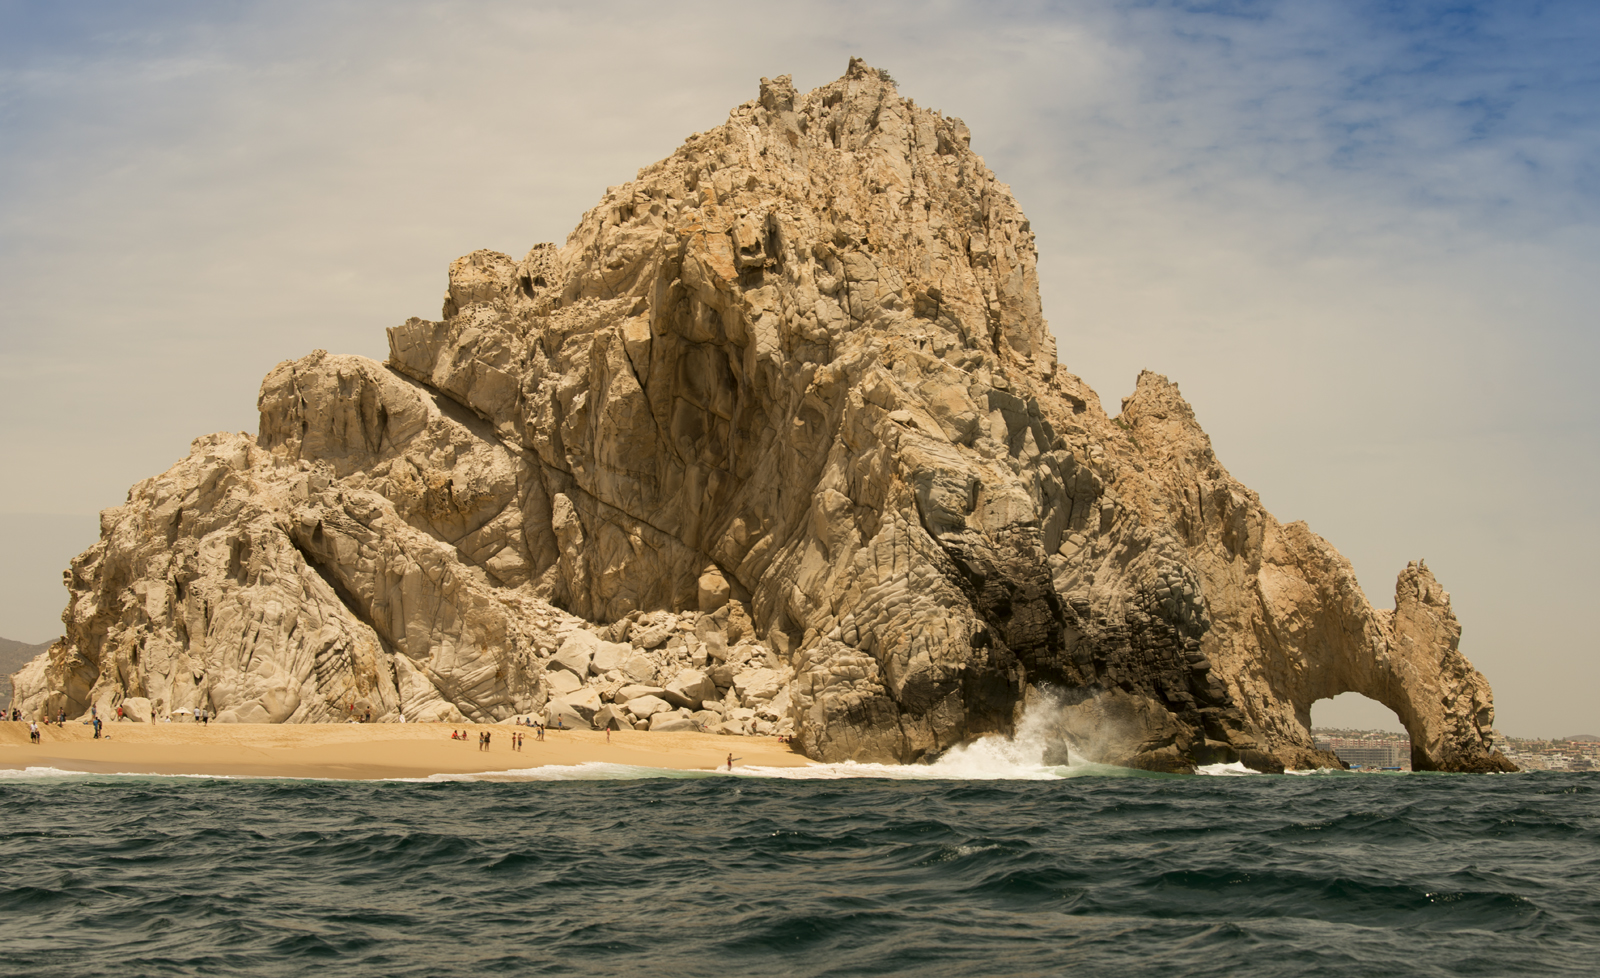 Baja, California